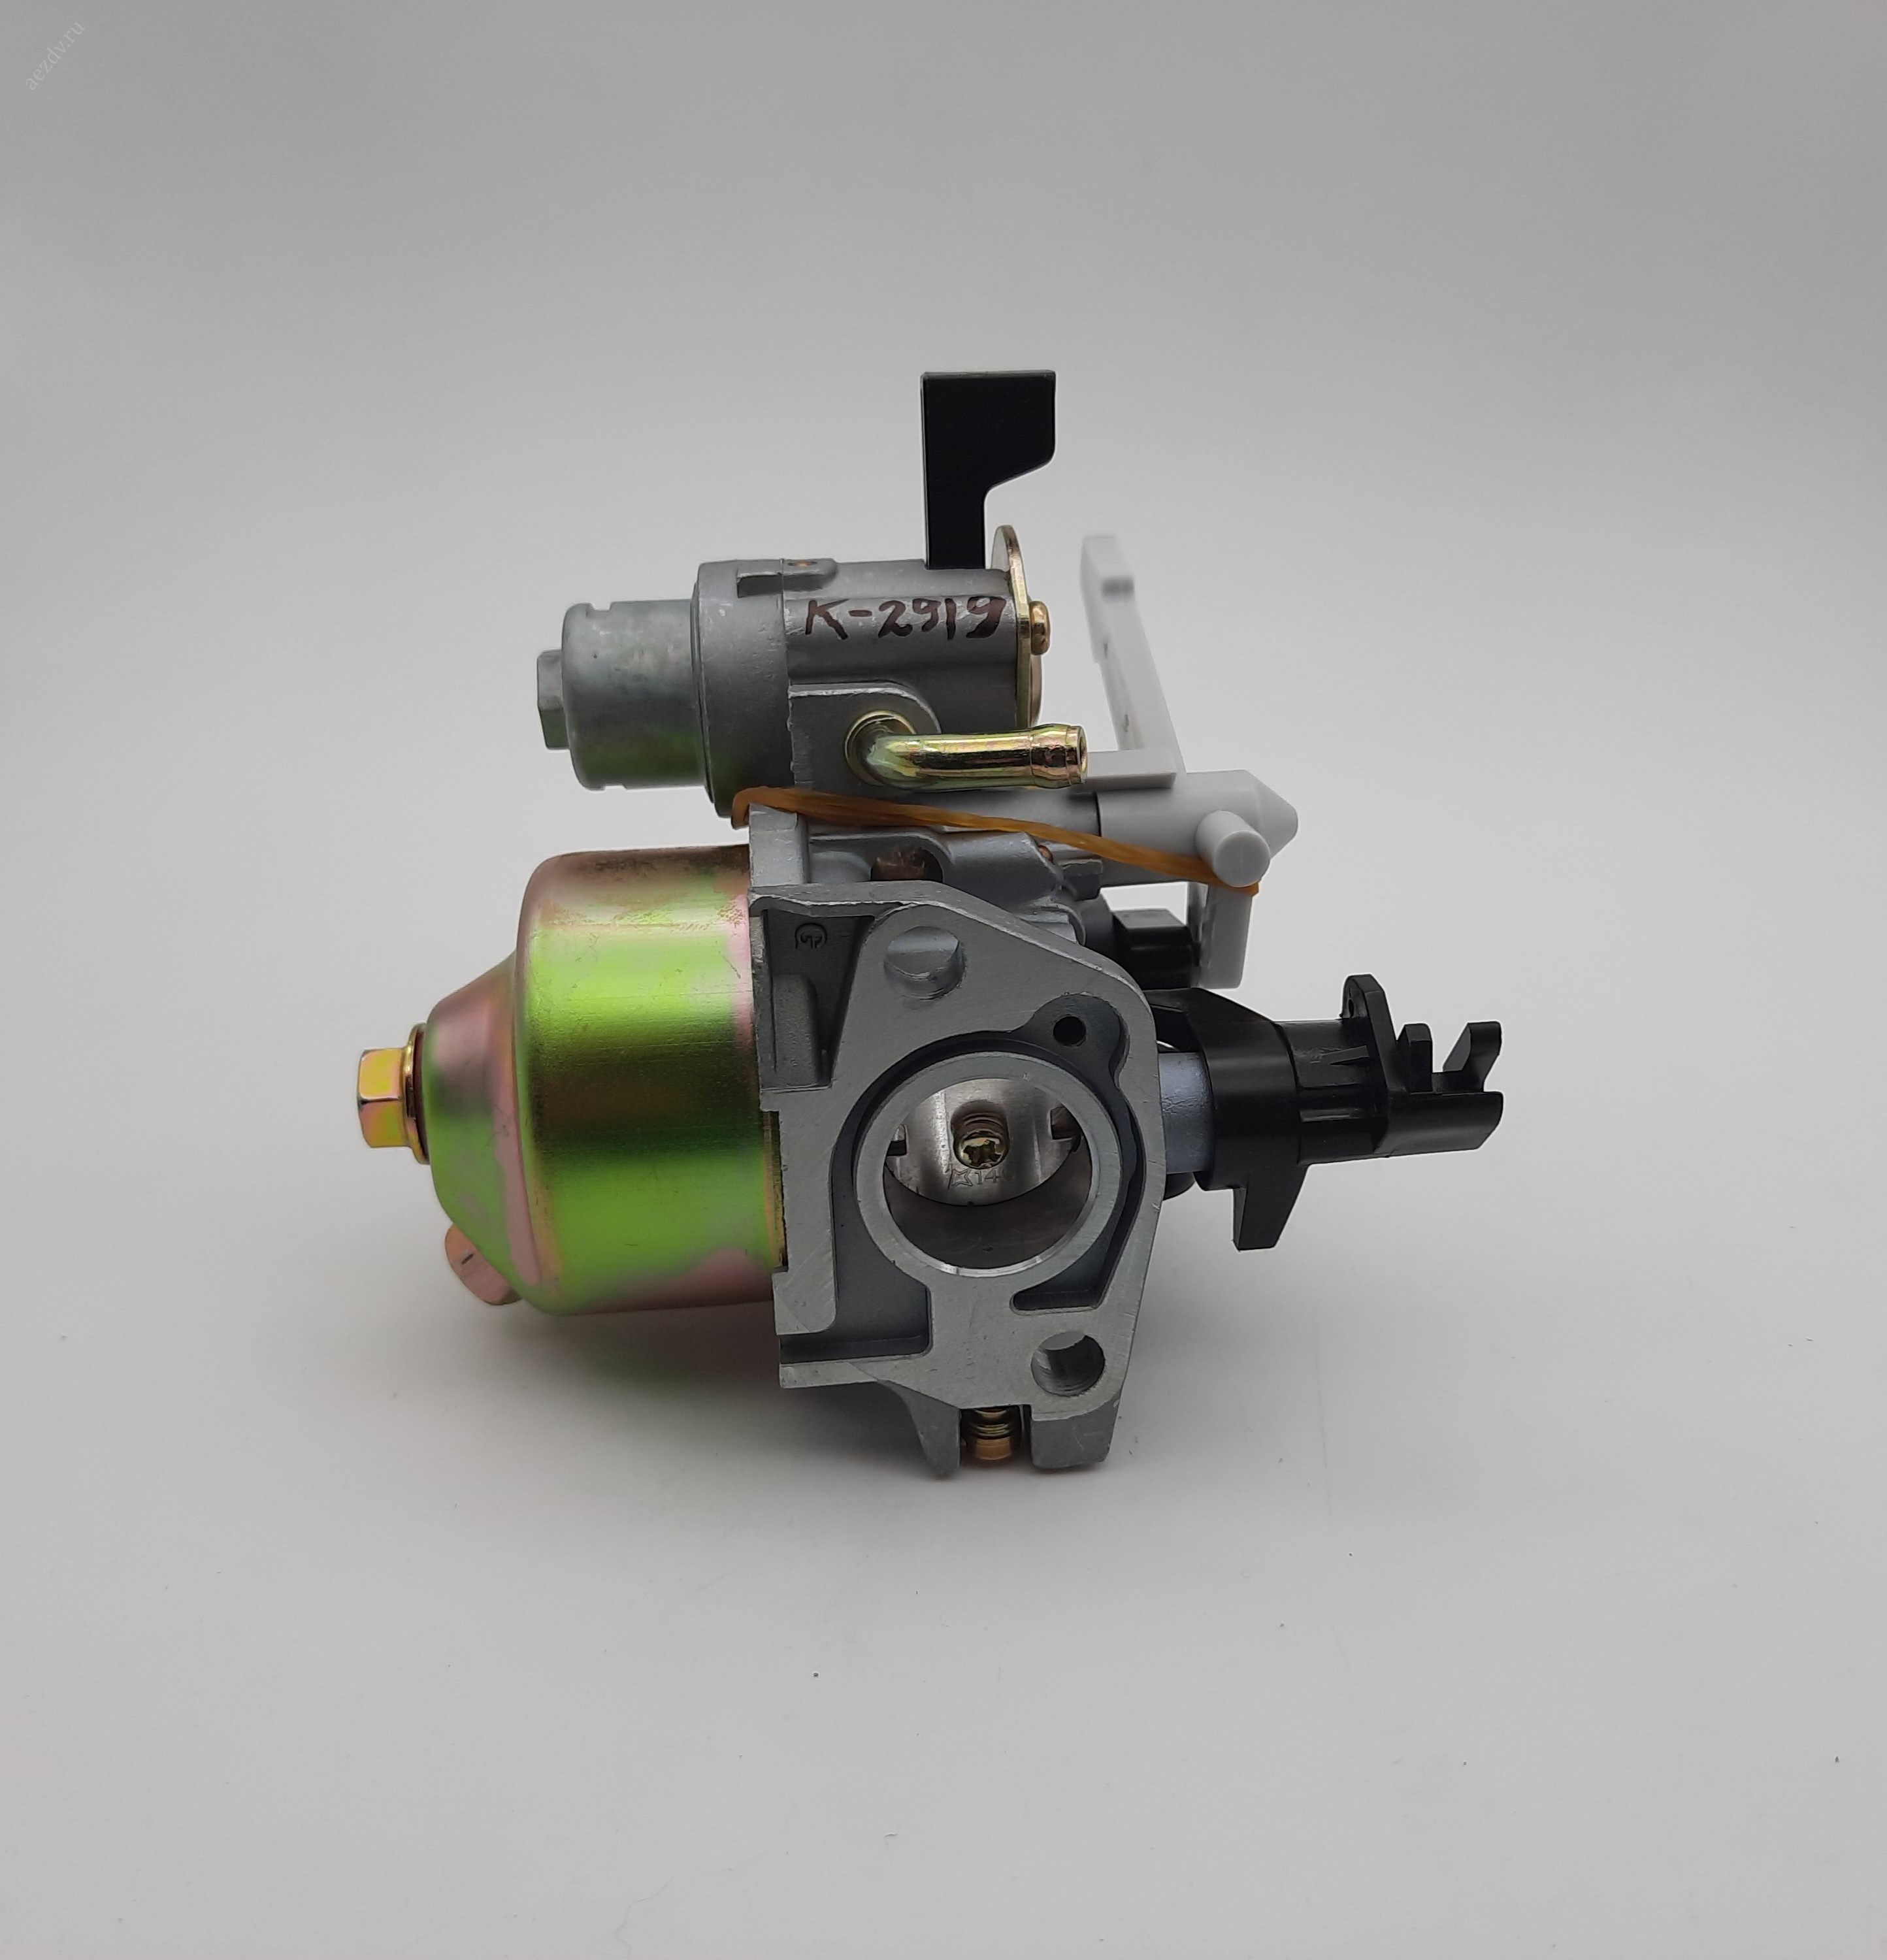 Карбюратор для бензинового двигателя 168F-170F (GX160-GX200) 6.5-7.0л.с.